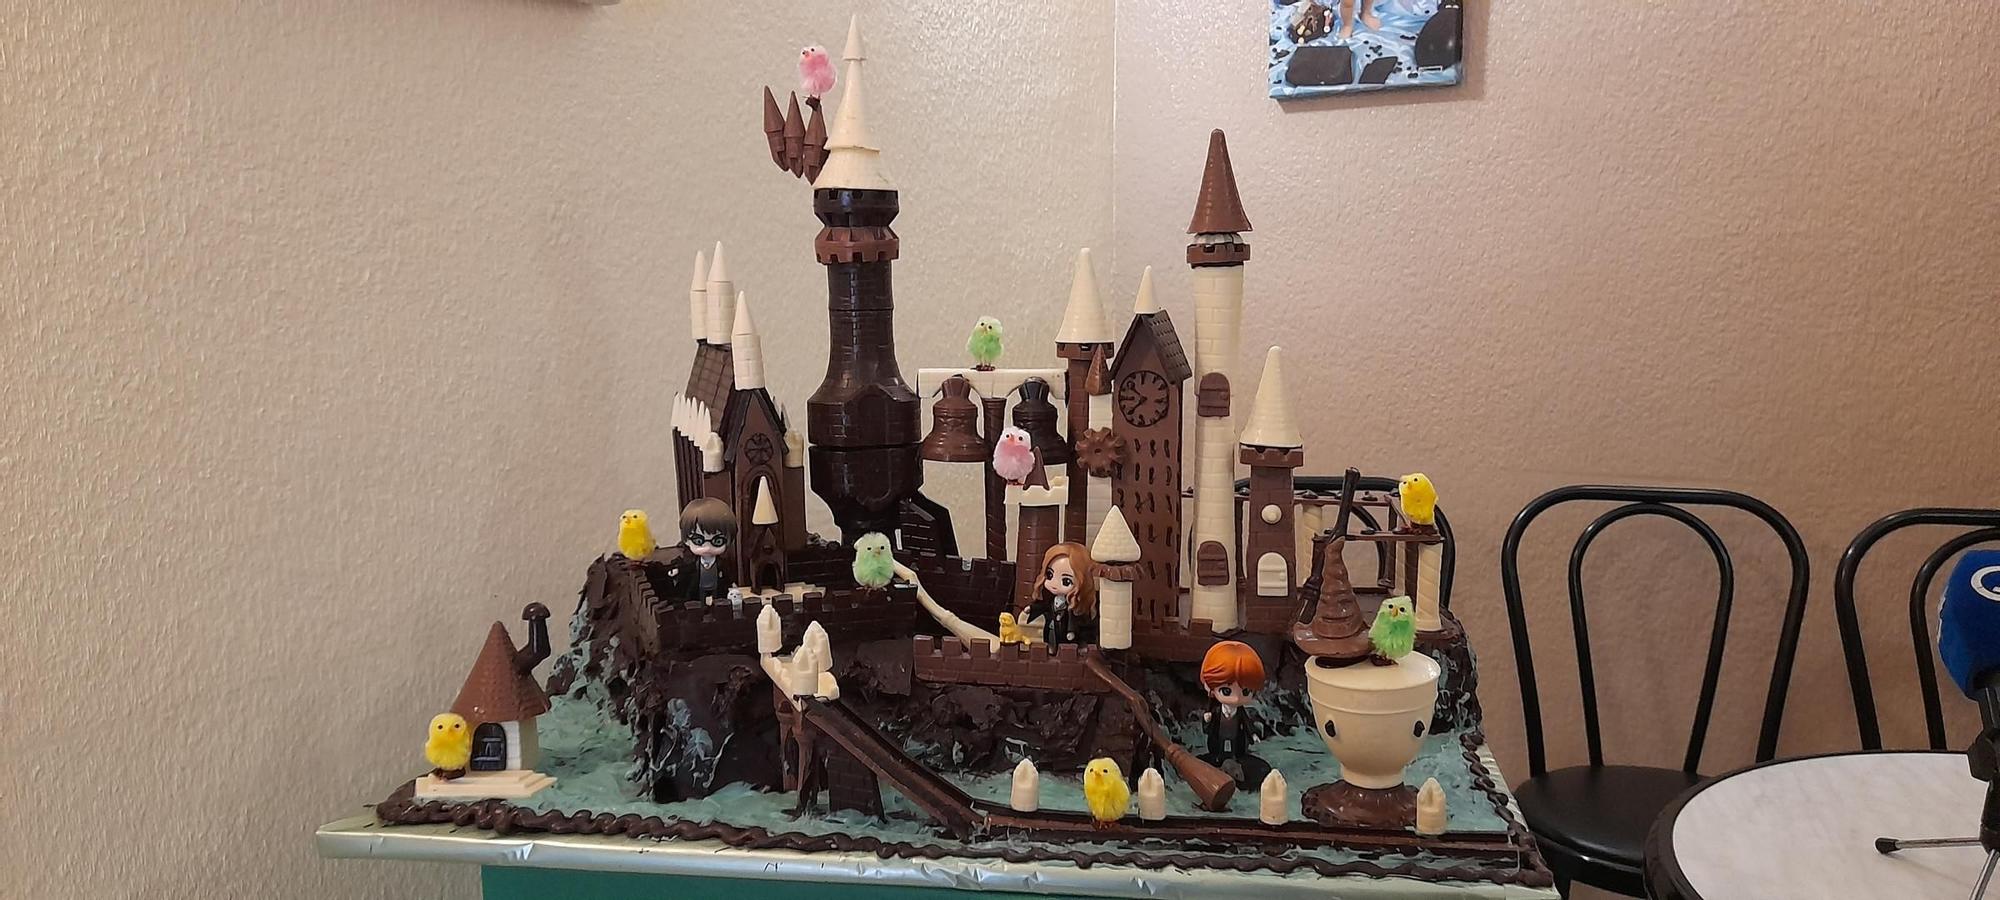 Monas de chocolate 'made in Castellón' basadas en La Patrulla Canina, Bob Esponja o Harry Potter